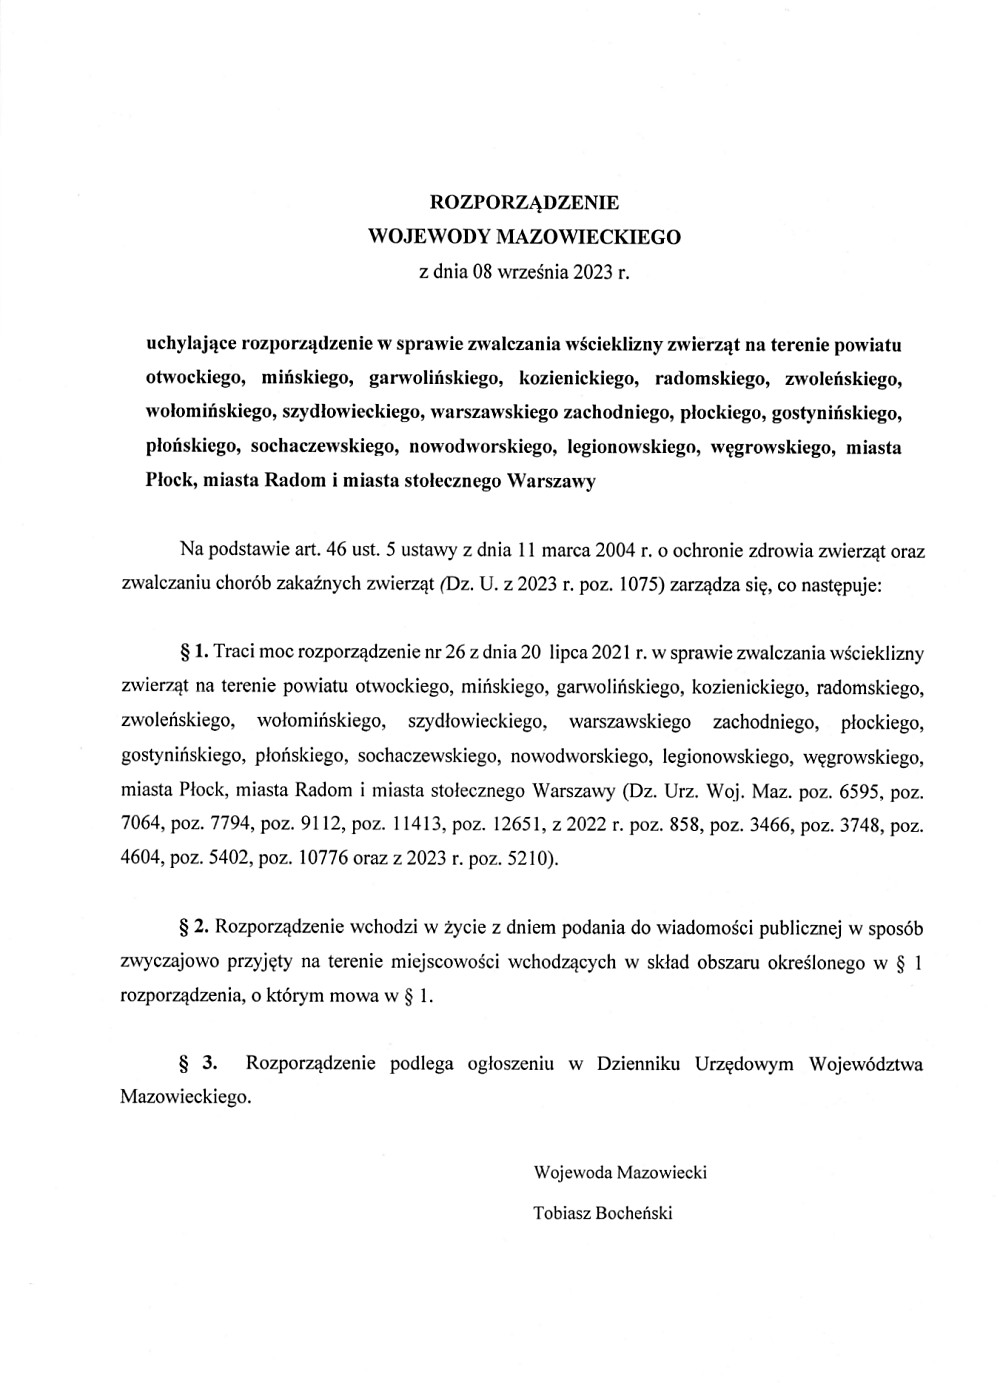 Powiatowy Lekarz Weterynarii w Radomiu przekazuje Rozporządzenie Wojewody Mazowieckiego z dnia 08 września 2023 r. uchylające rozporządzenie w sprawie zwalczania wścieklizny zwierząt na terenie m.in. powiatu radomskiego.